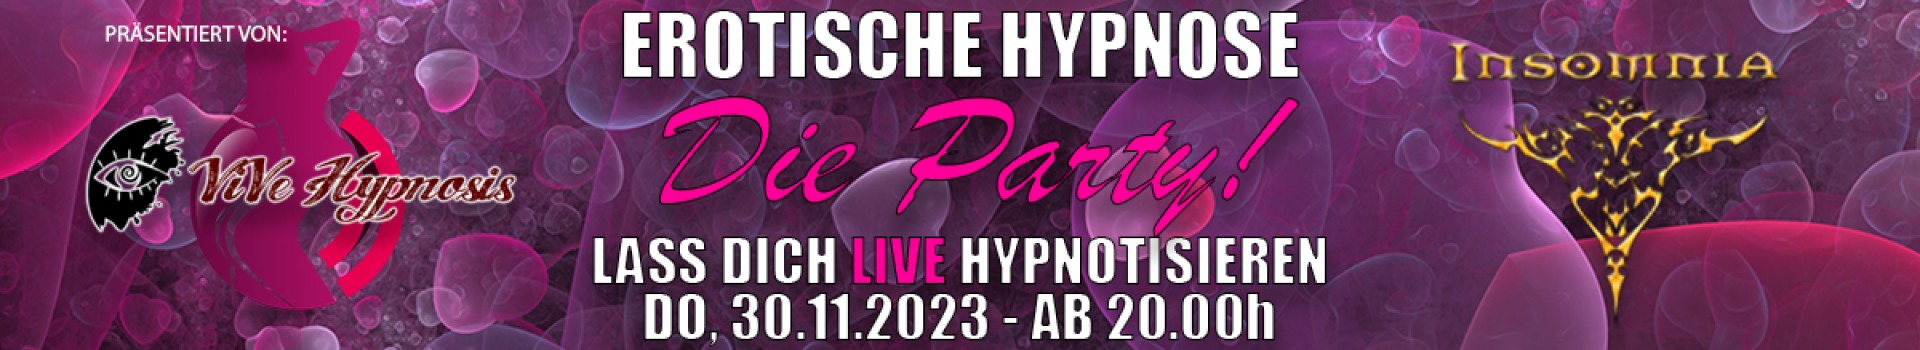 Erotische Hypnose - Die Party